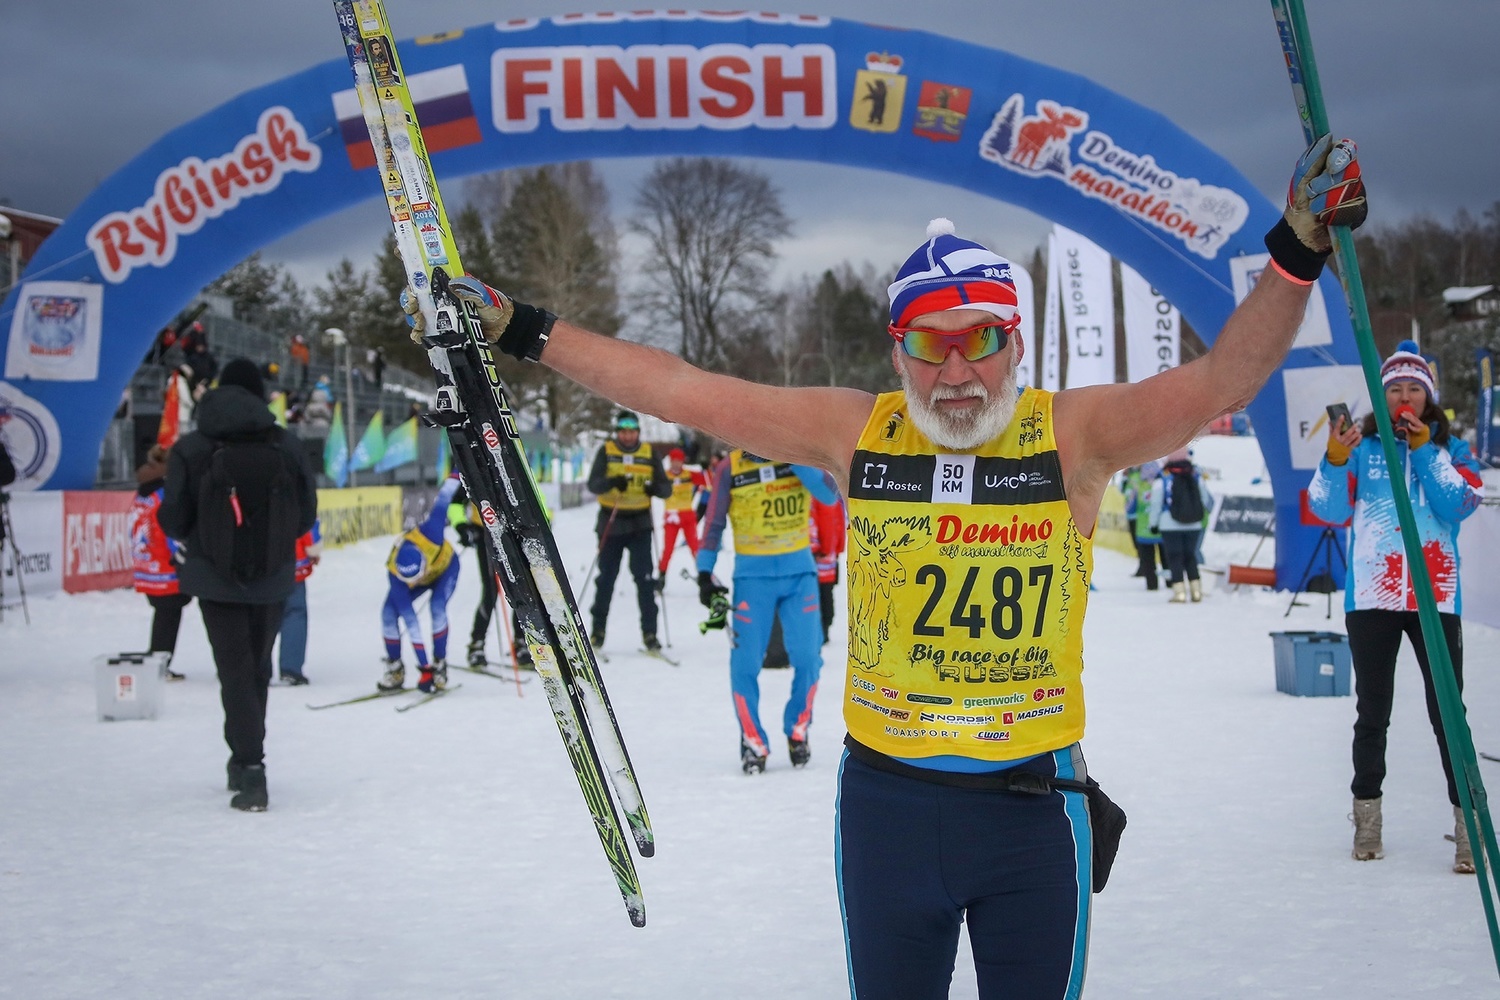 Deminsk ski marathon